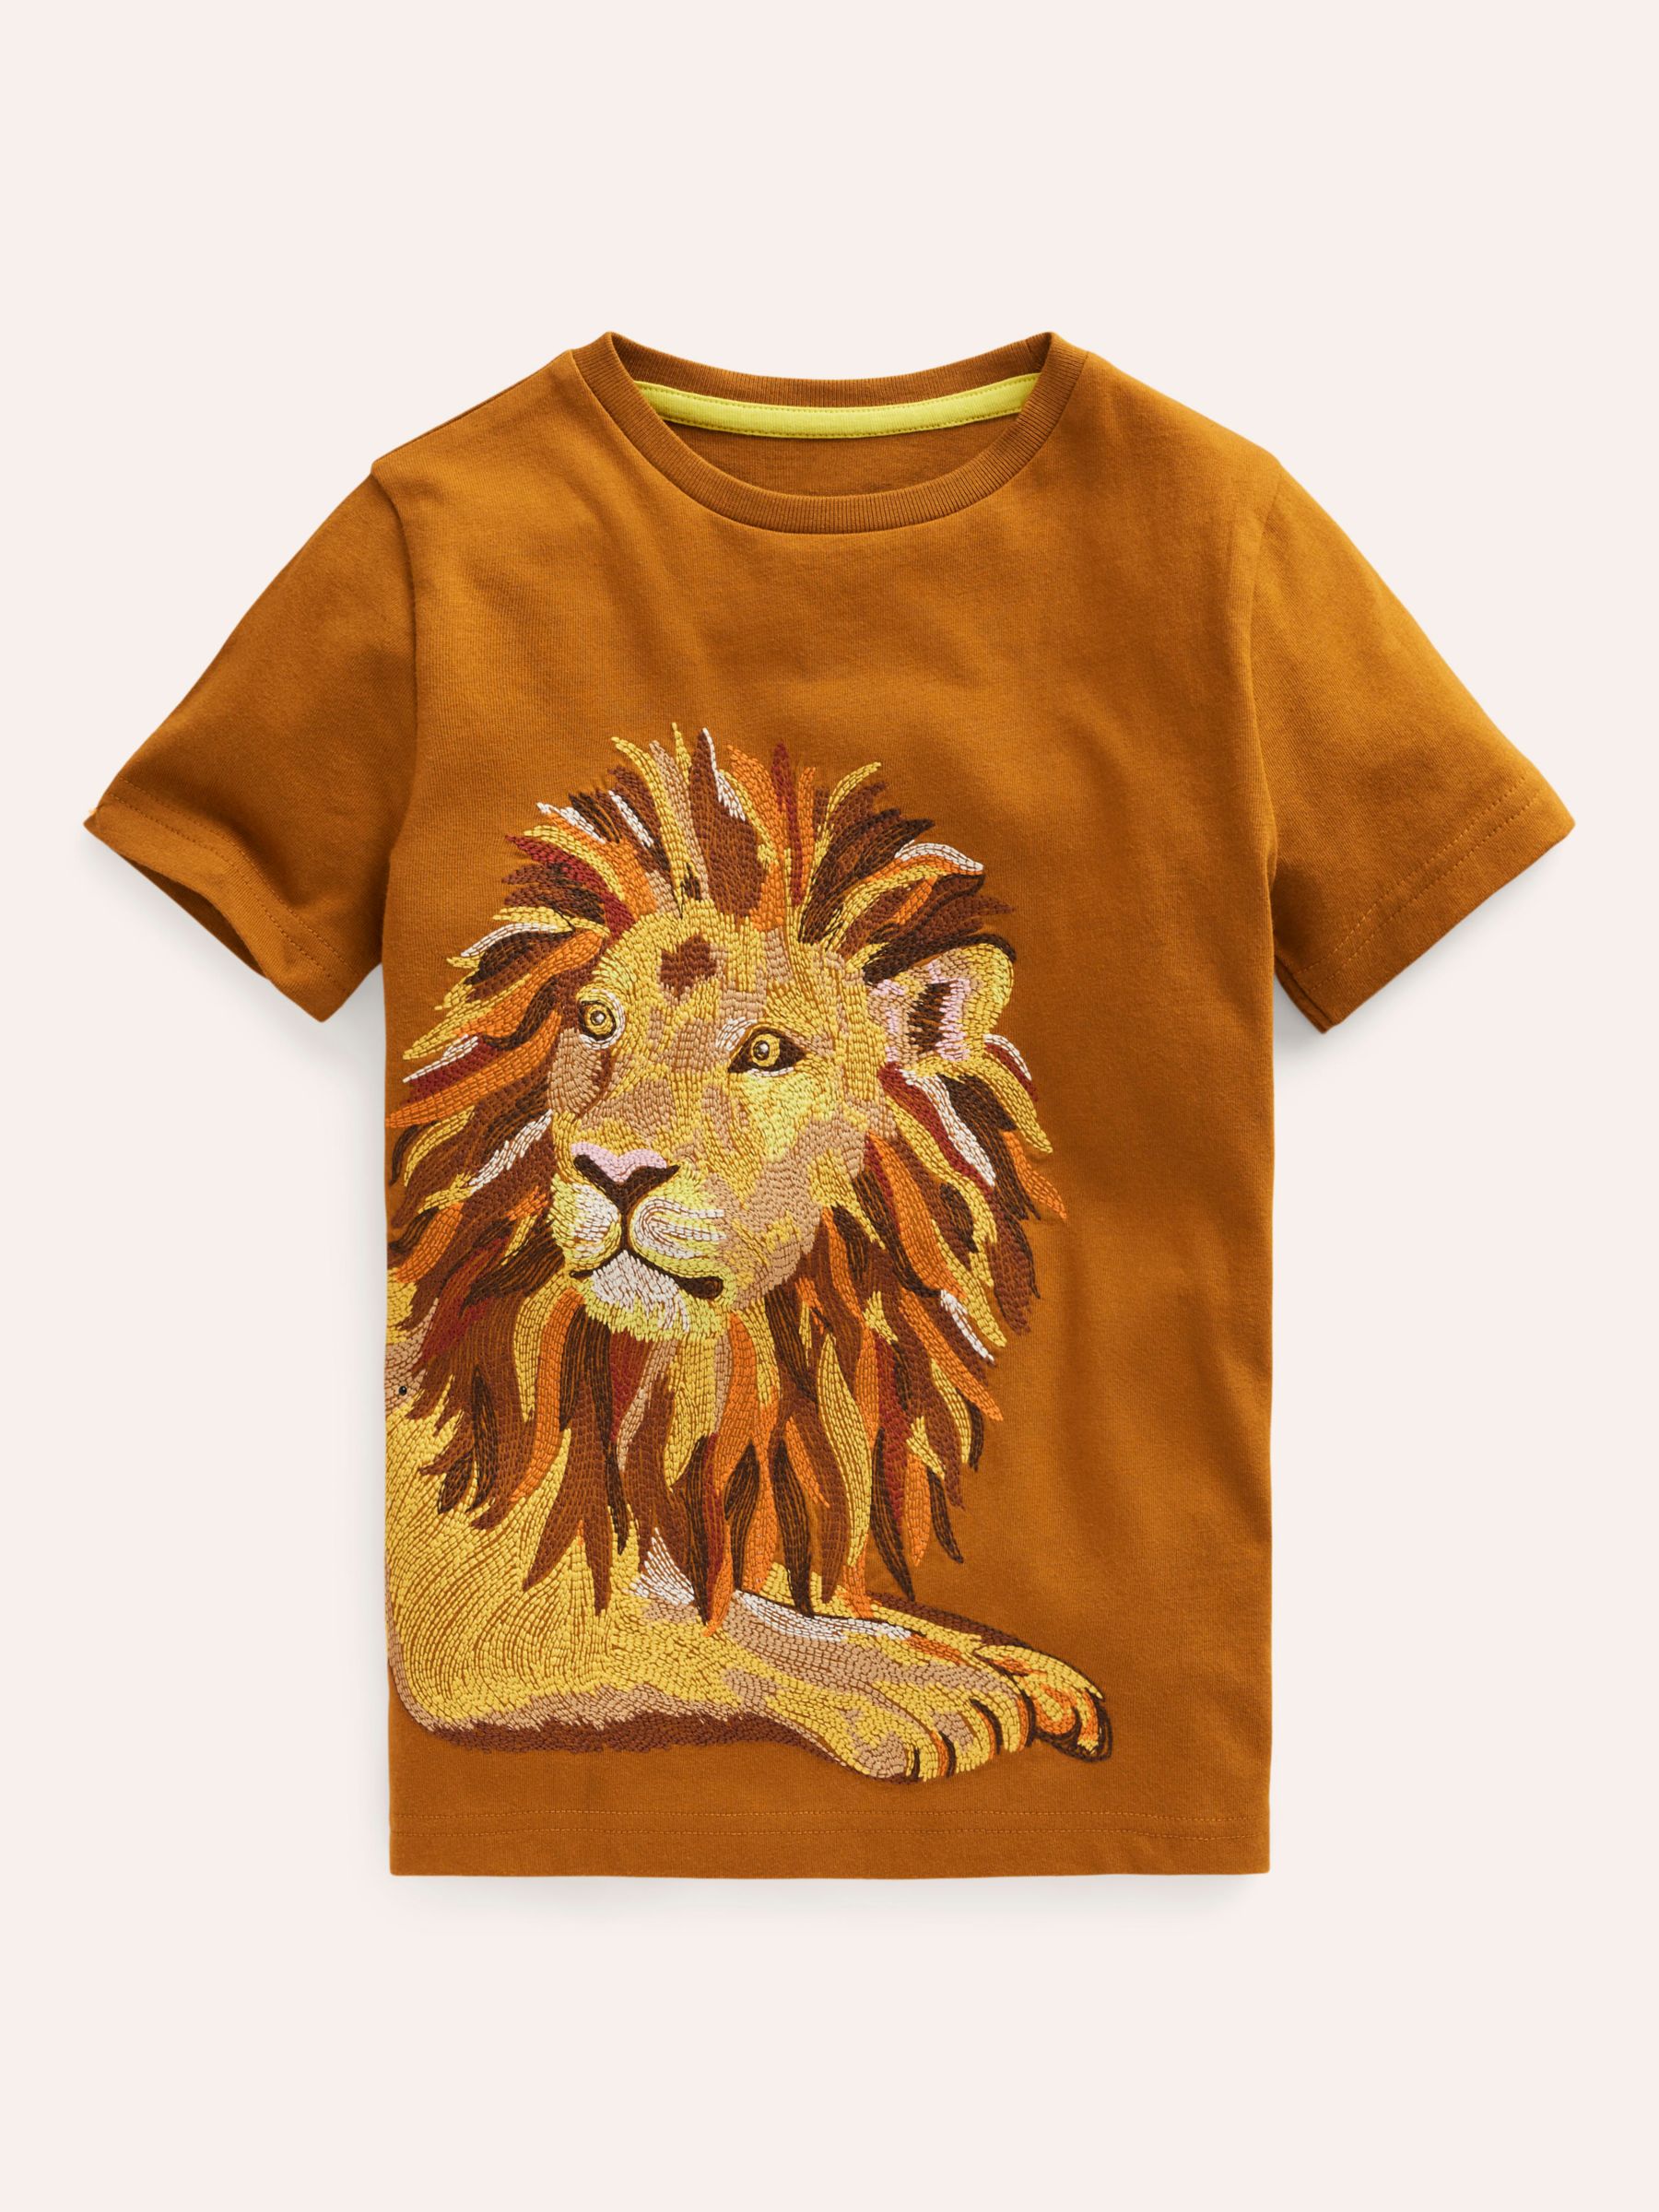 Mini Boden Kids' Lion Superstitch T-Shirt, Chestnut, 2-3 years